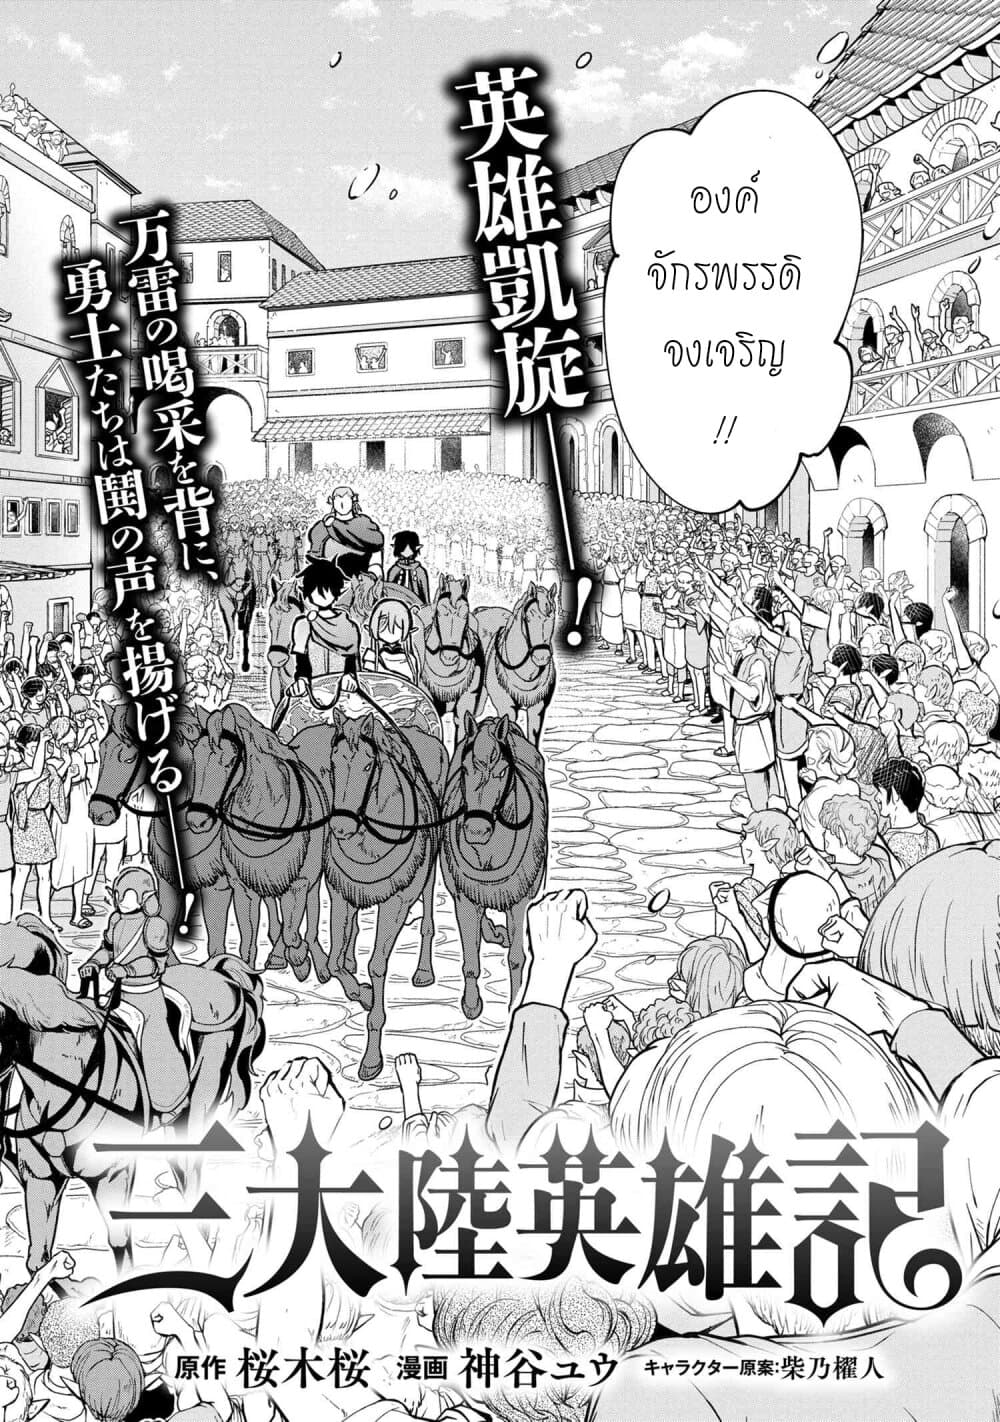 Santa Rikuei Yuu 10-Victory Day and The maid